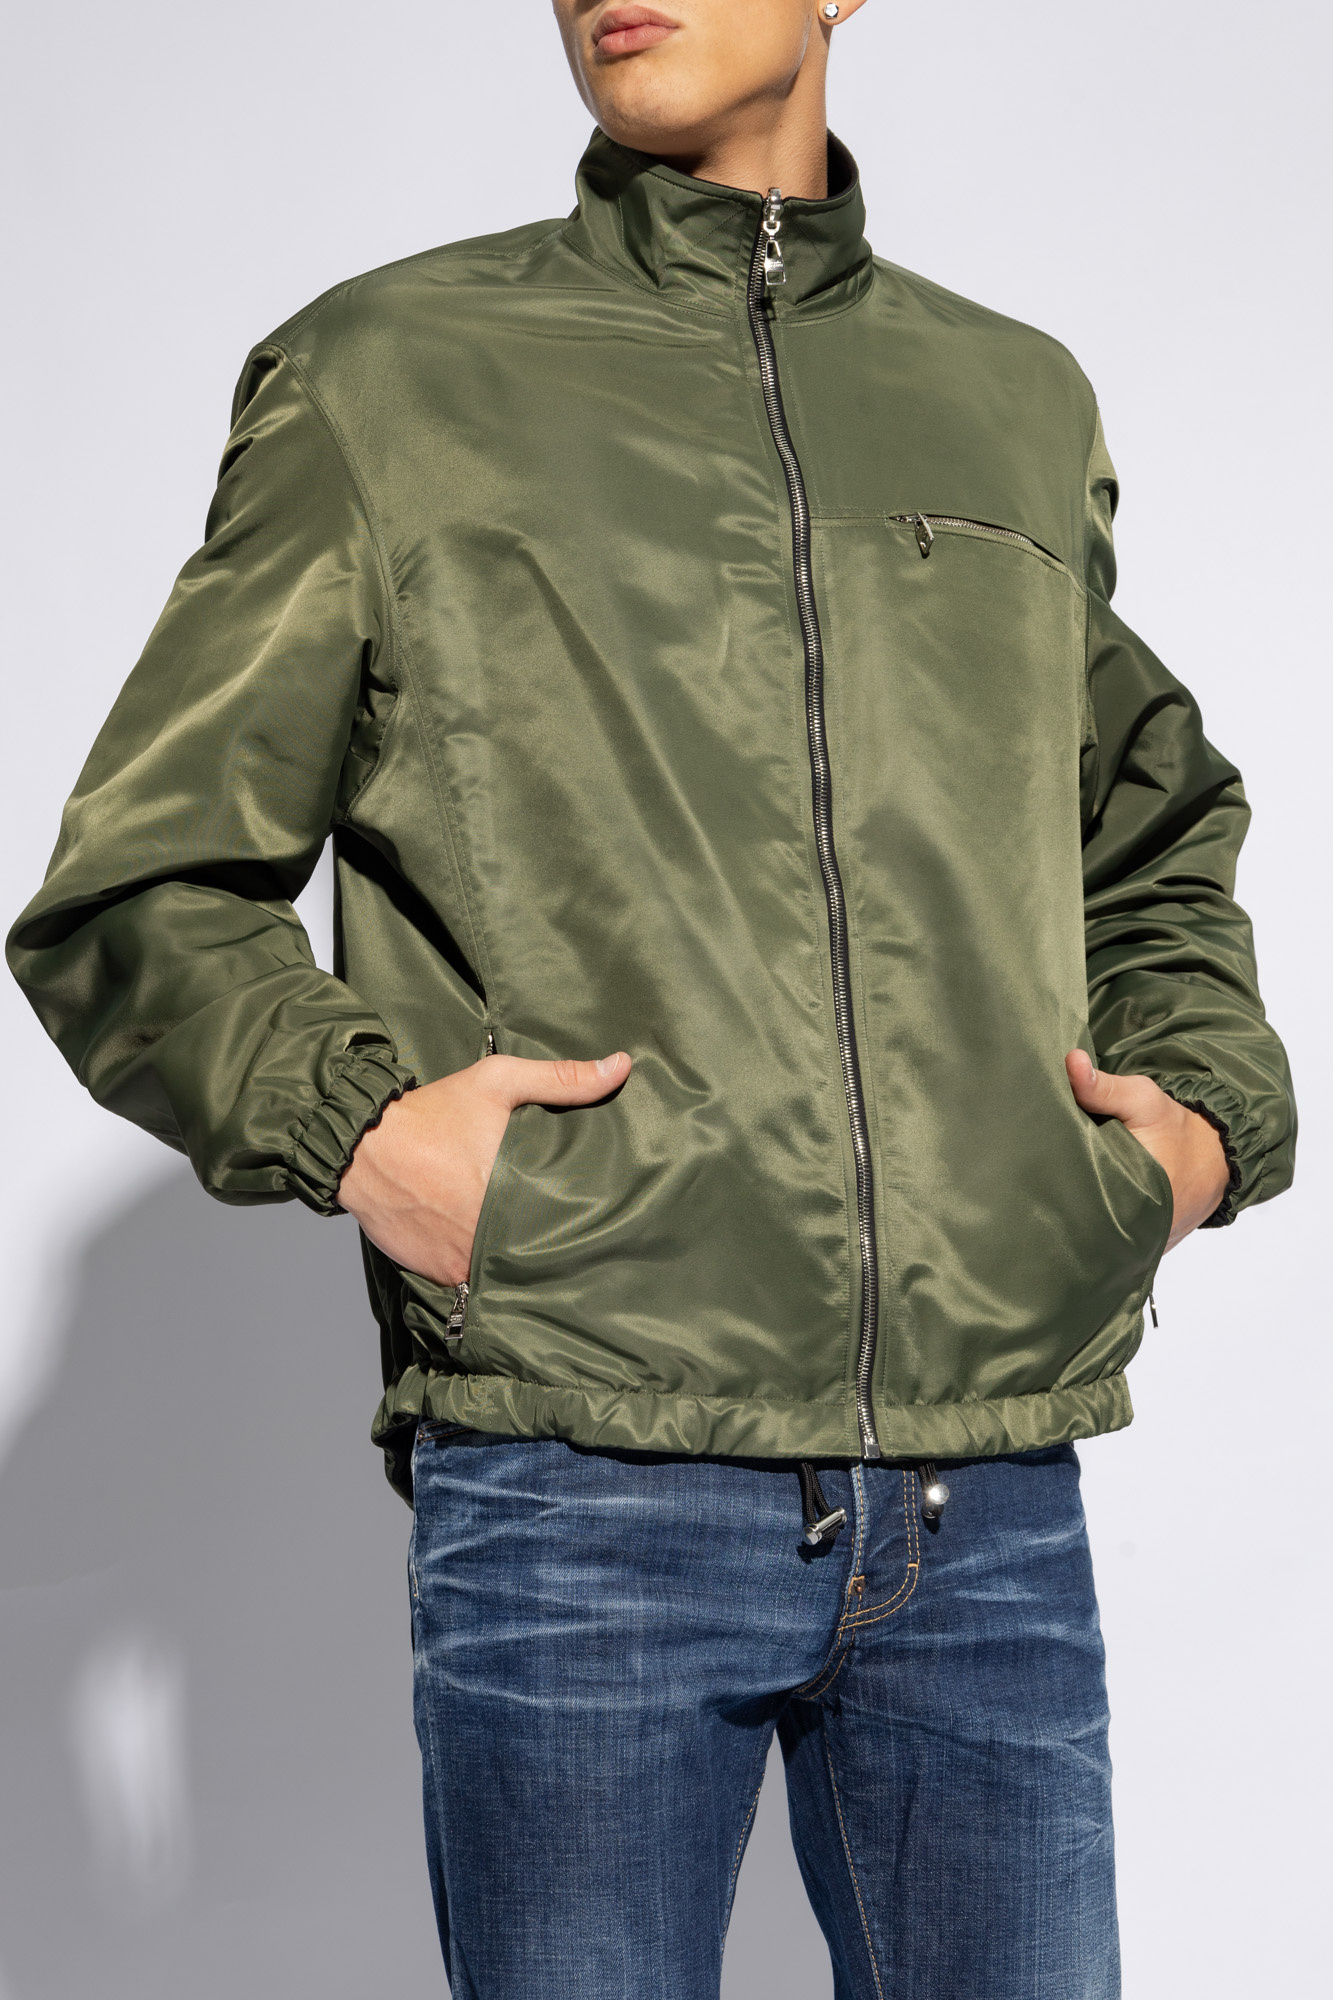 Alexander McQueen Reversible jacket